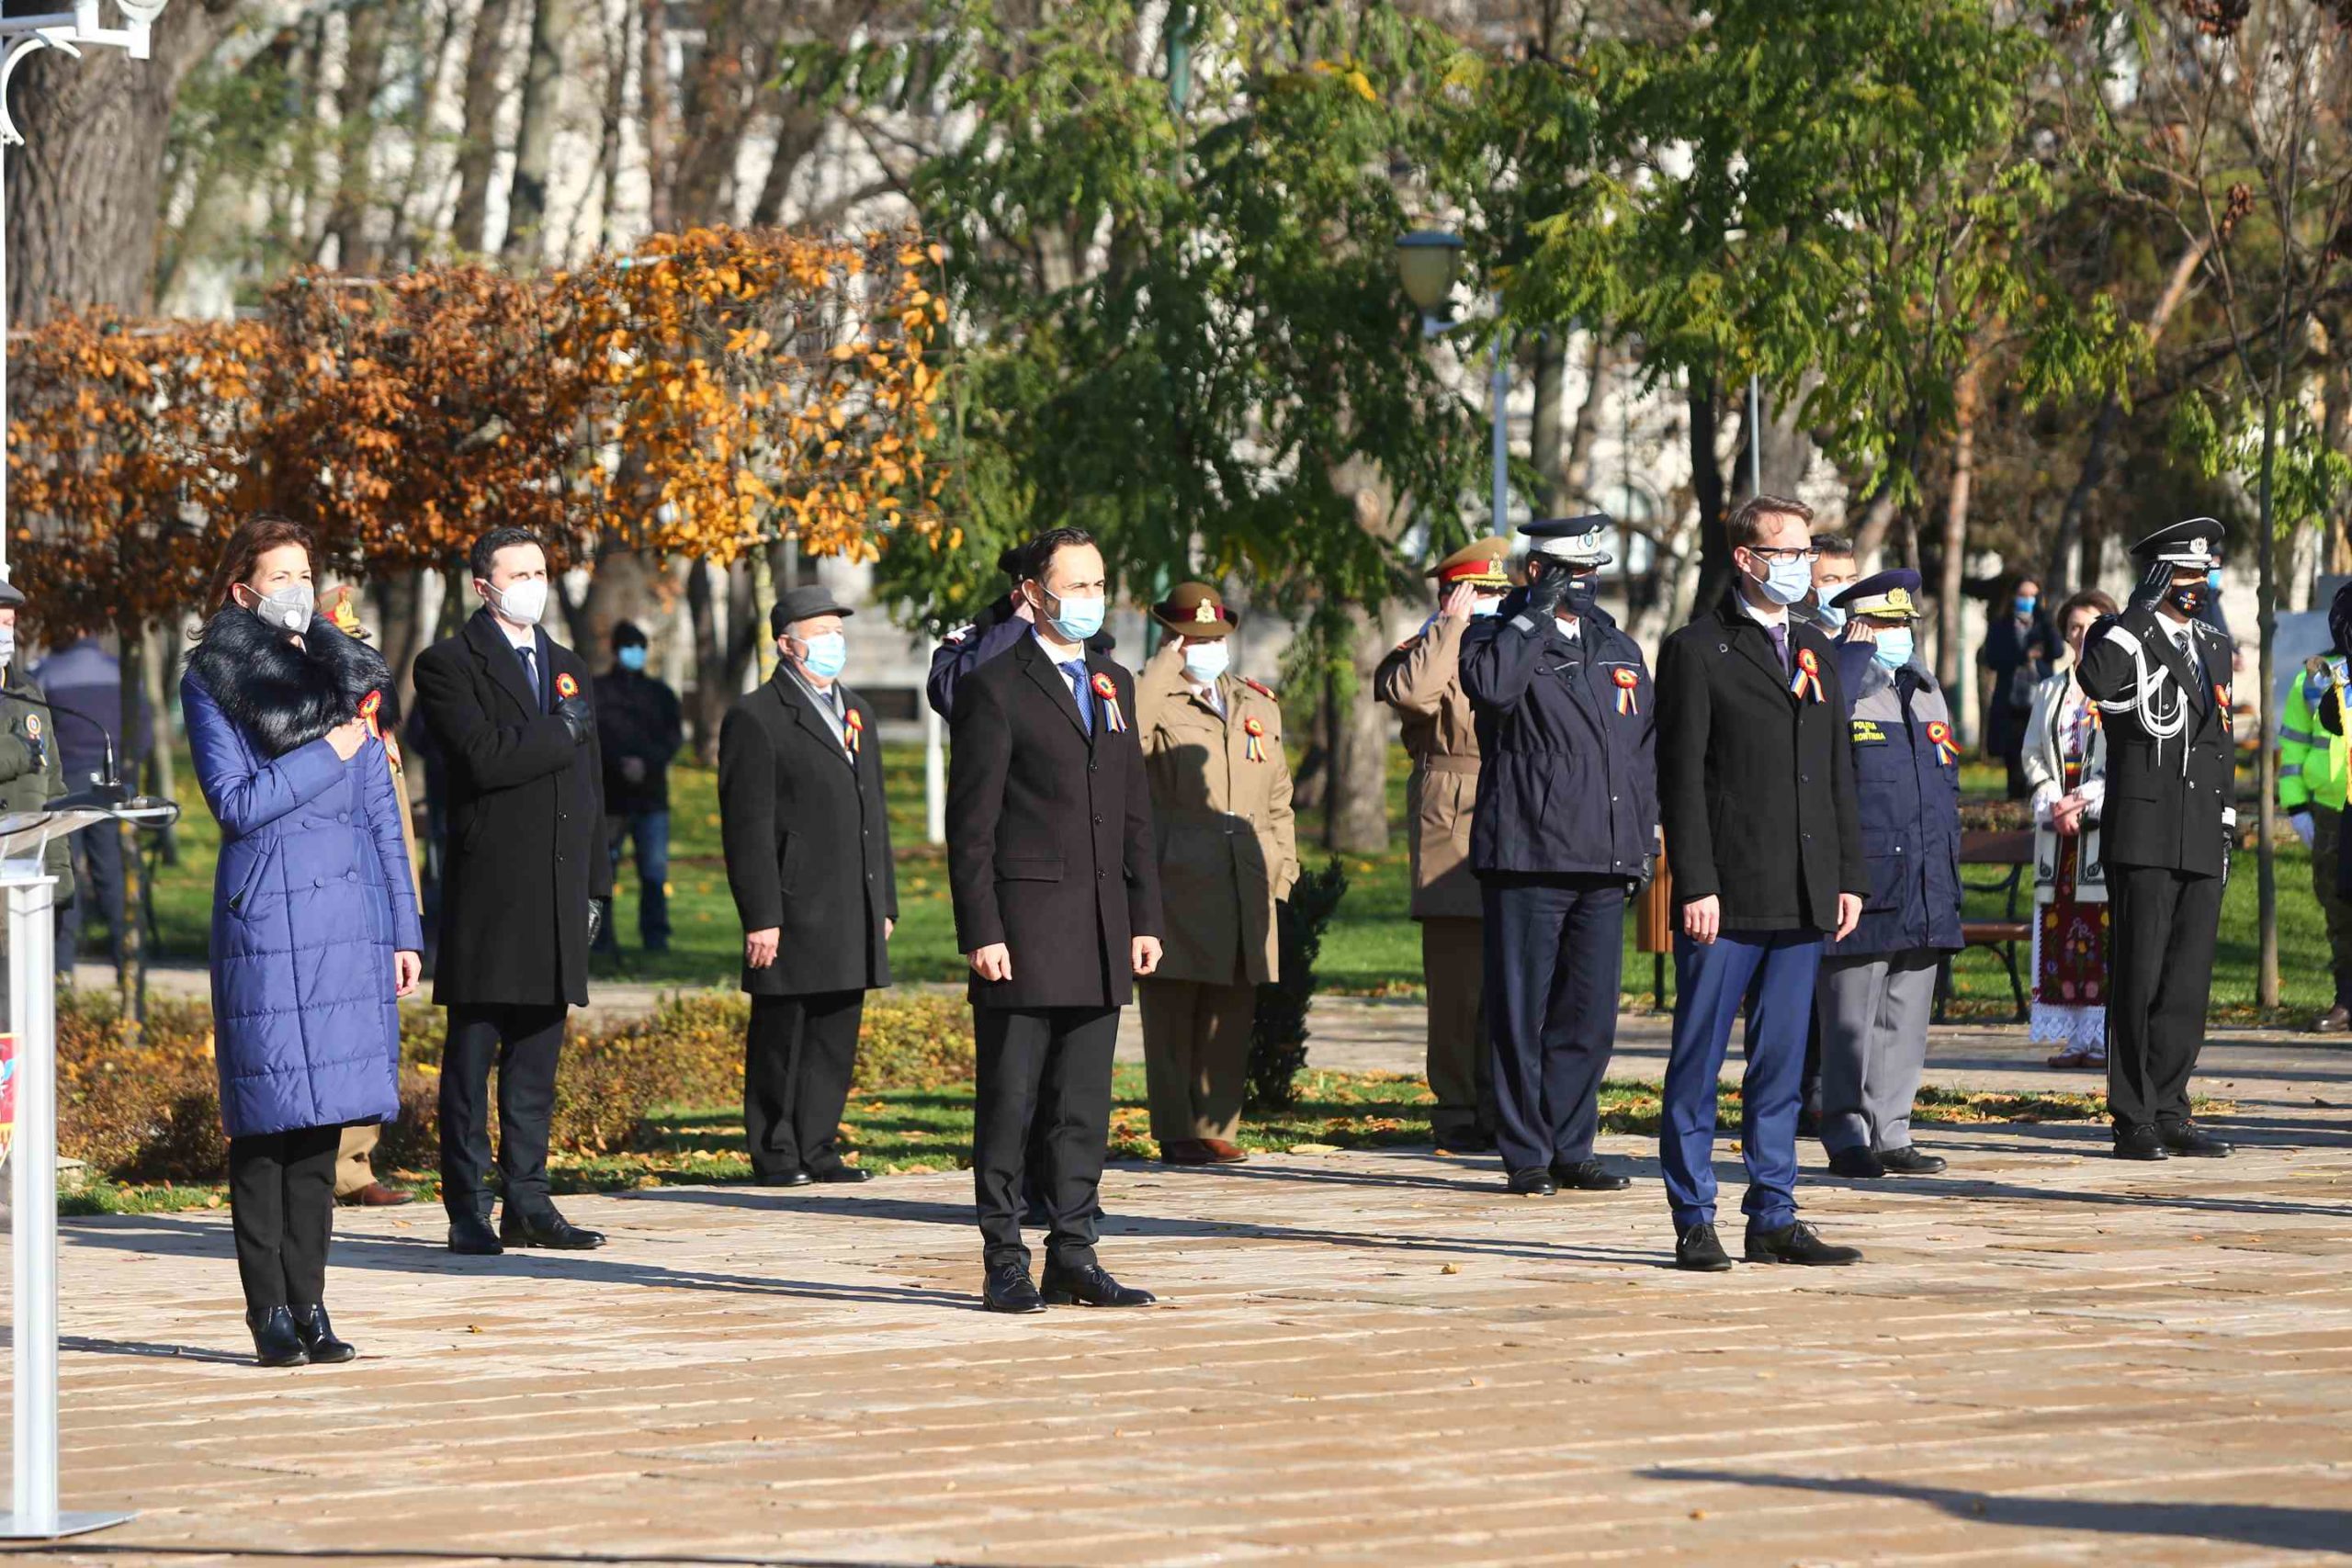 ceremonie 1 decembrie armata (4)